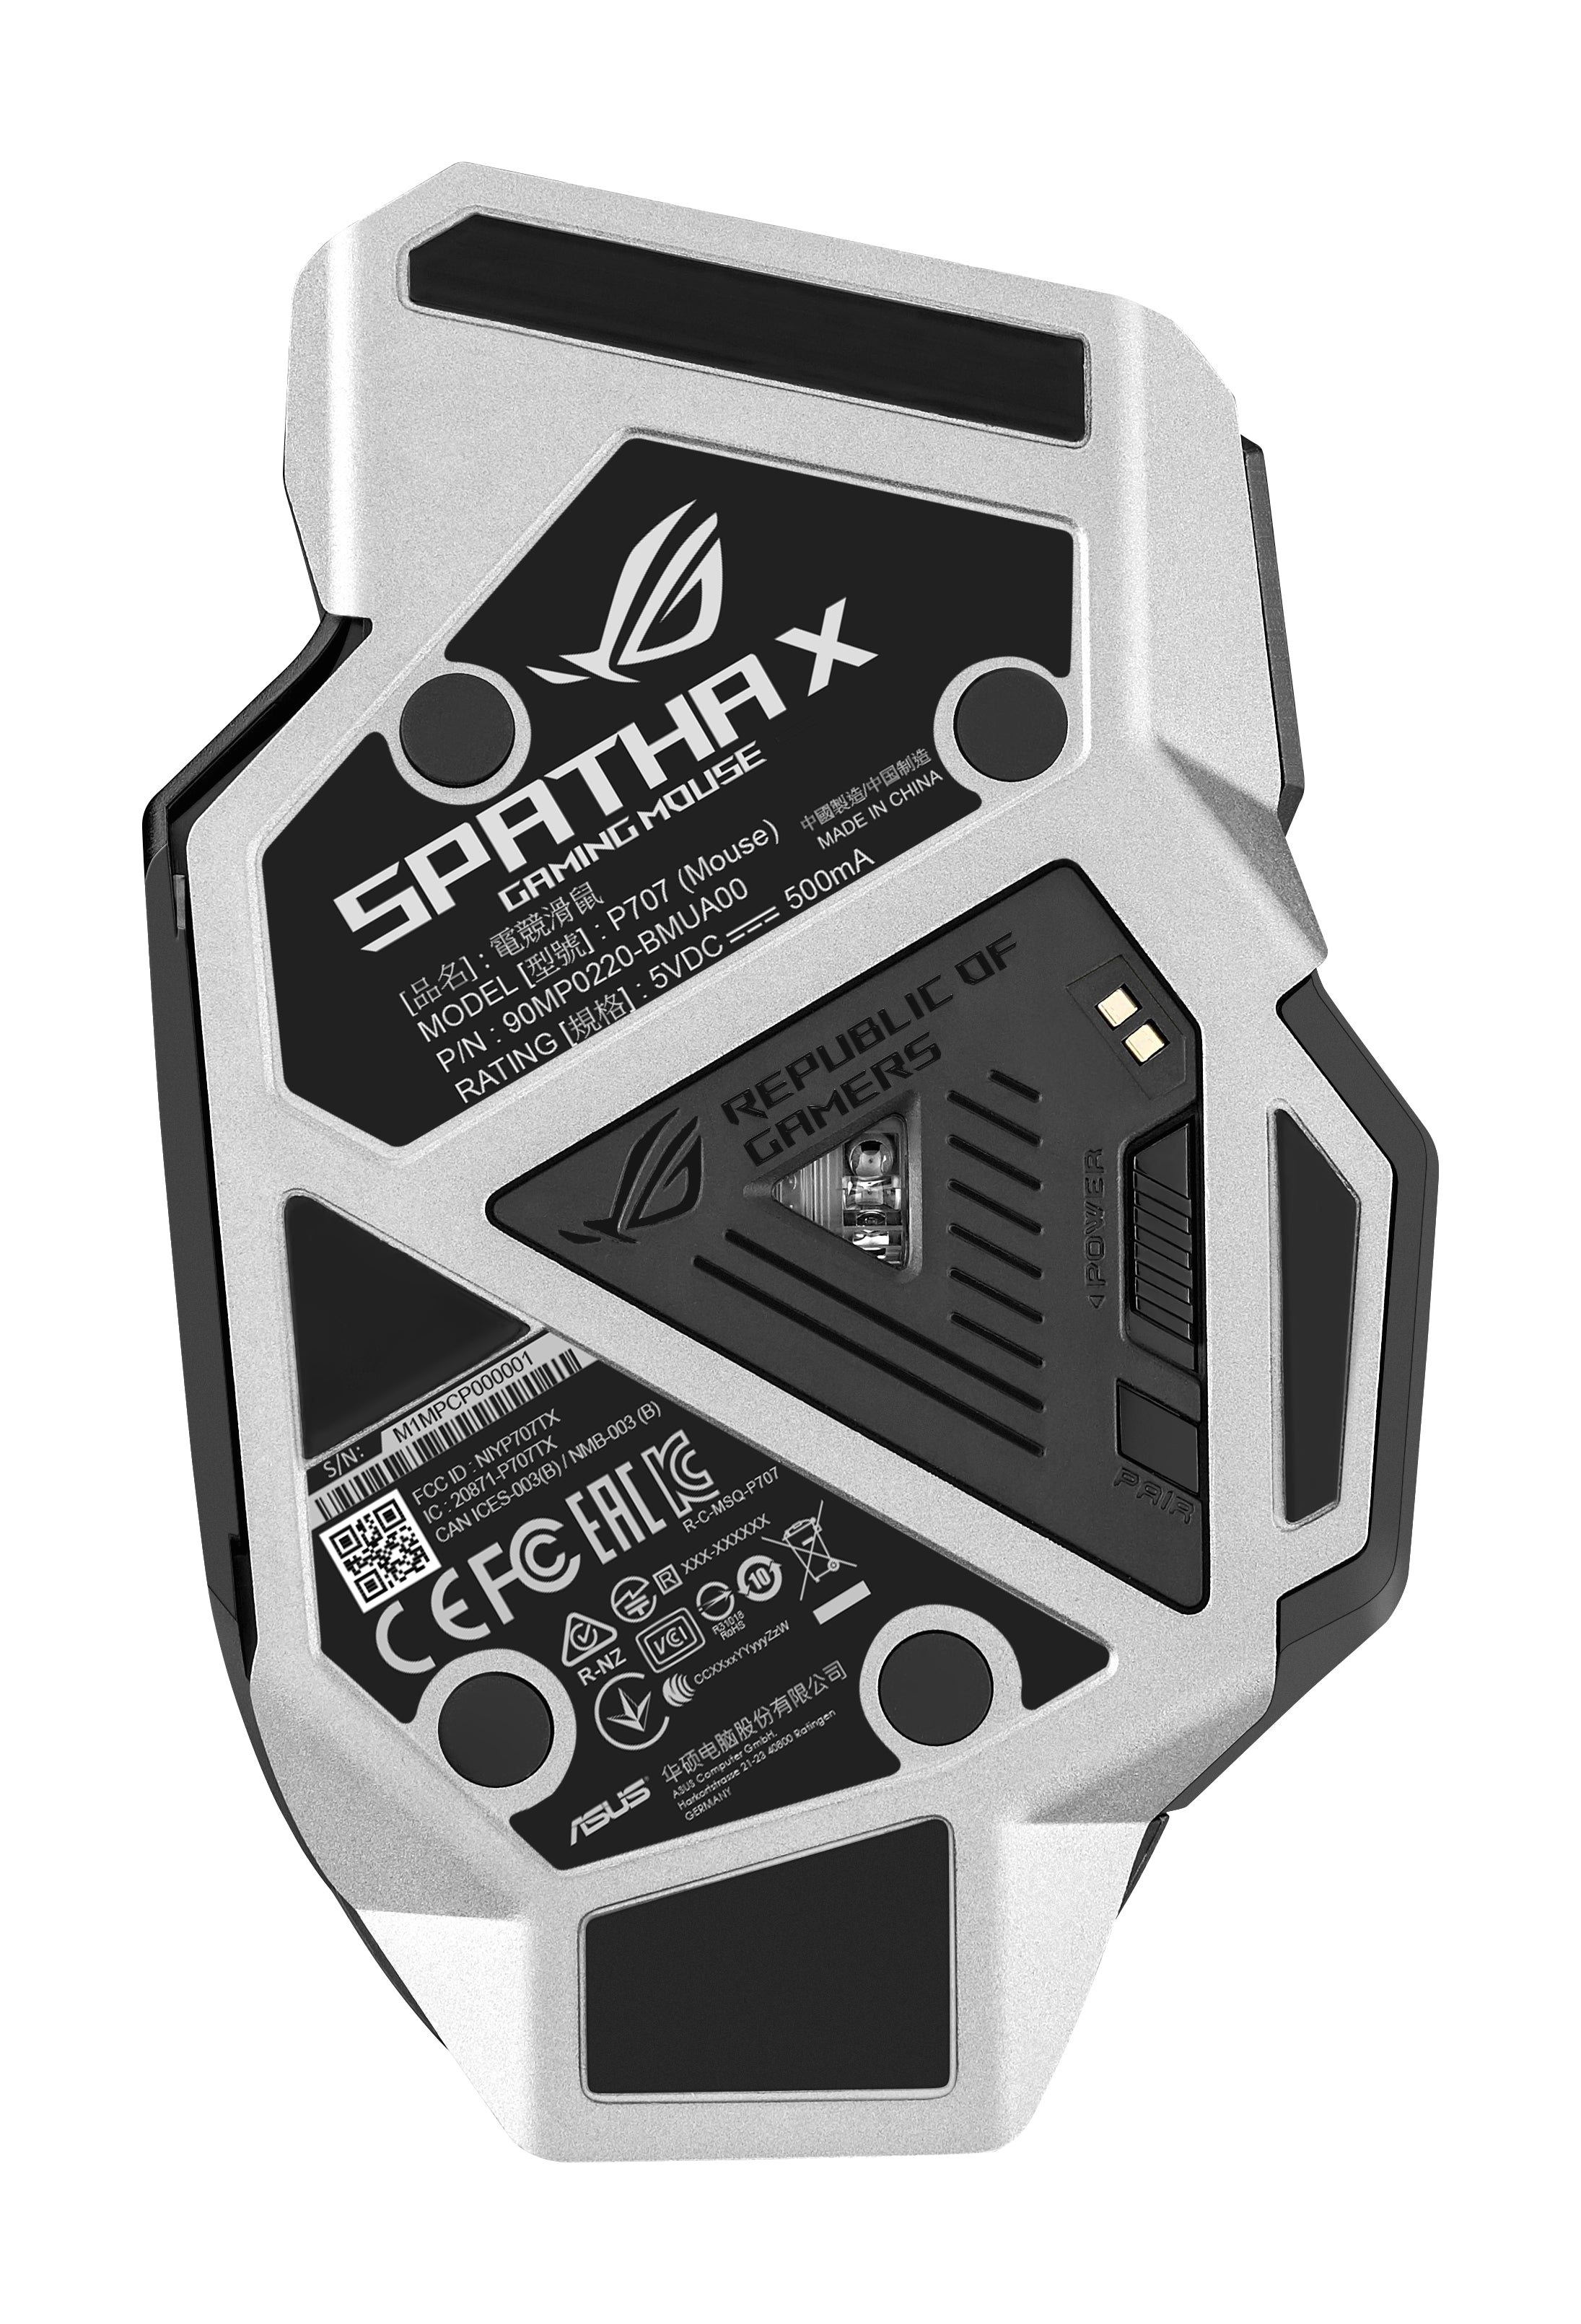 ASUS ROG Spatha X (P707) Kabellose Gaming-Maus, ergonomisches Design, 12 programmierbare Tasten, 19.000 DPI